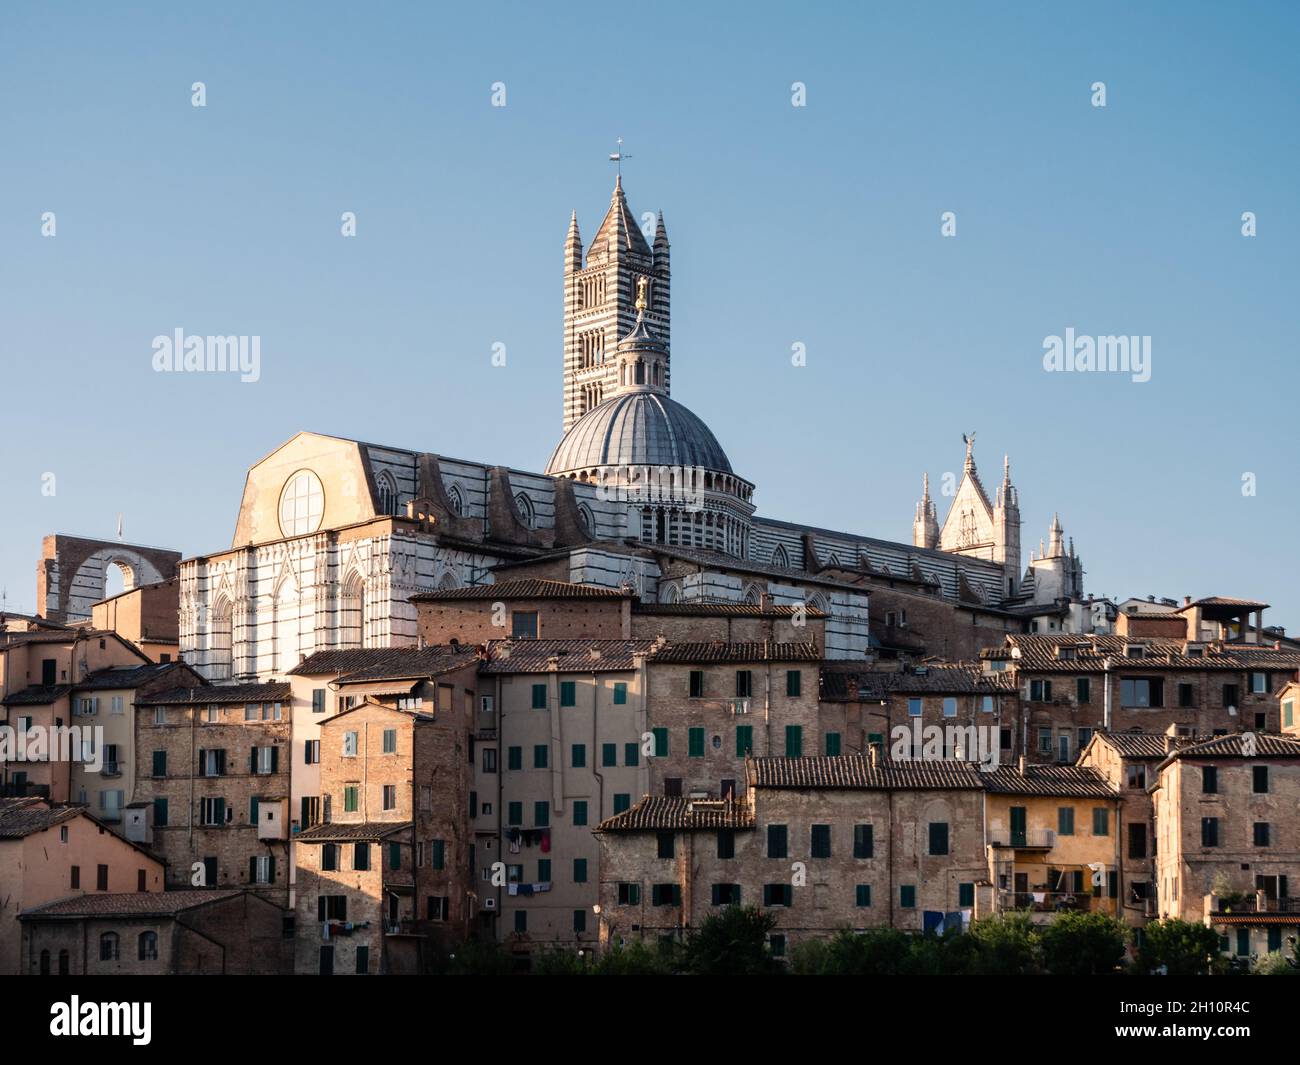 Kathedrale von Siena Stadtbild von Belfried in der Toskana oder Stadtbild mit dem Glockenturm Duomo di Siena Stockfoto